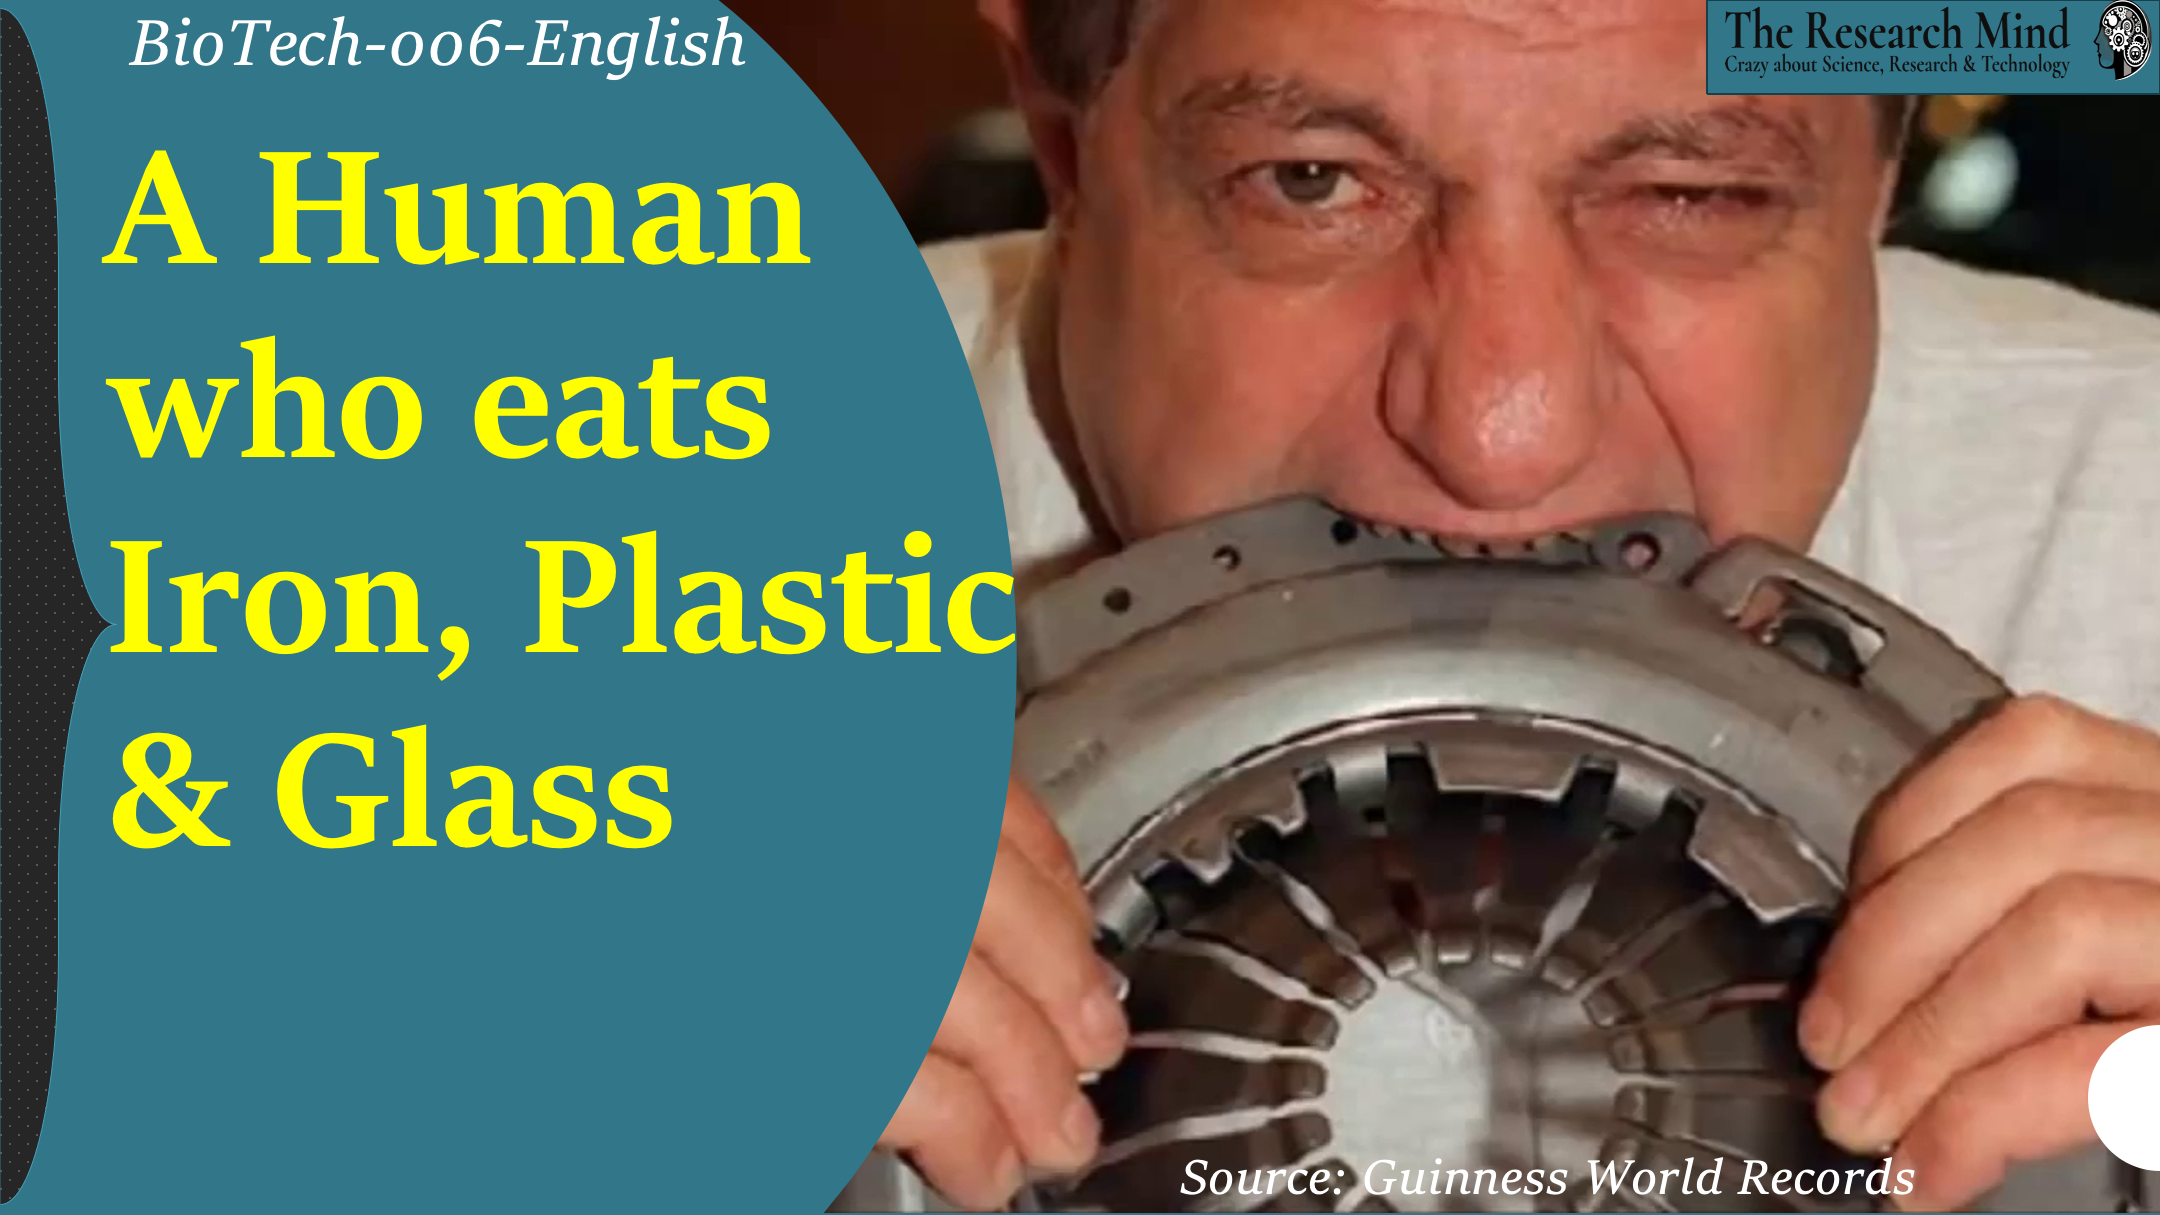 A Man who eats Iron, Plastic & Glass